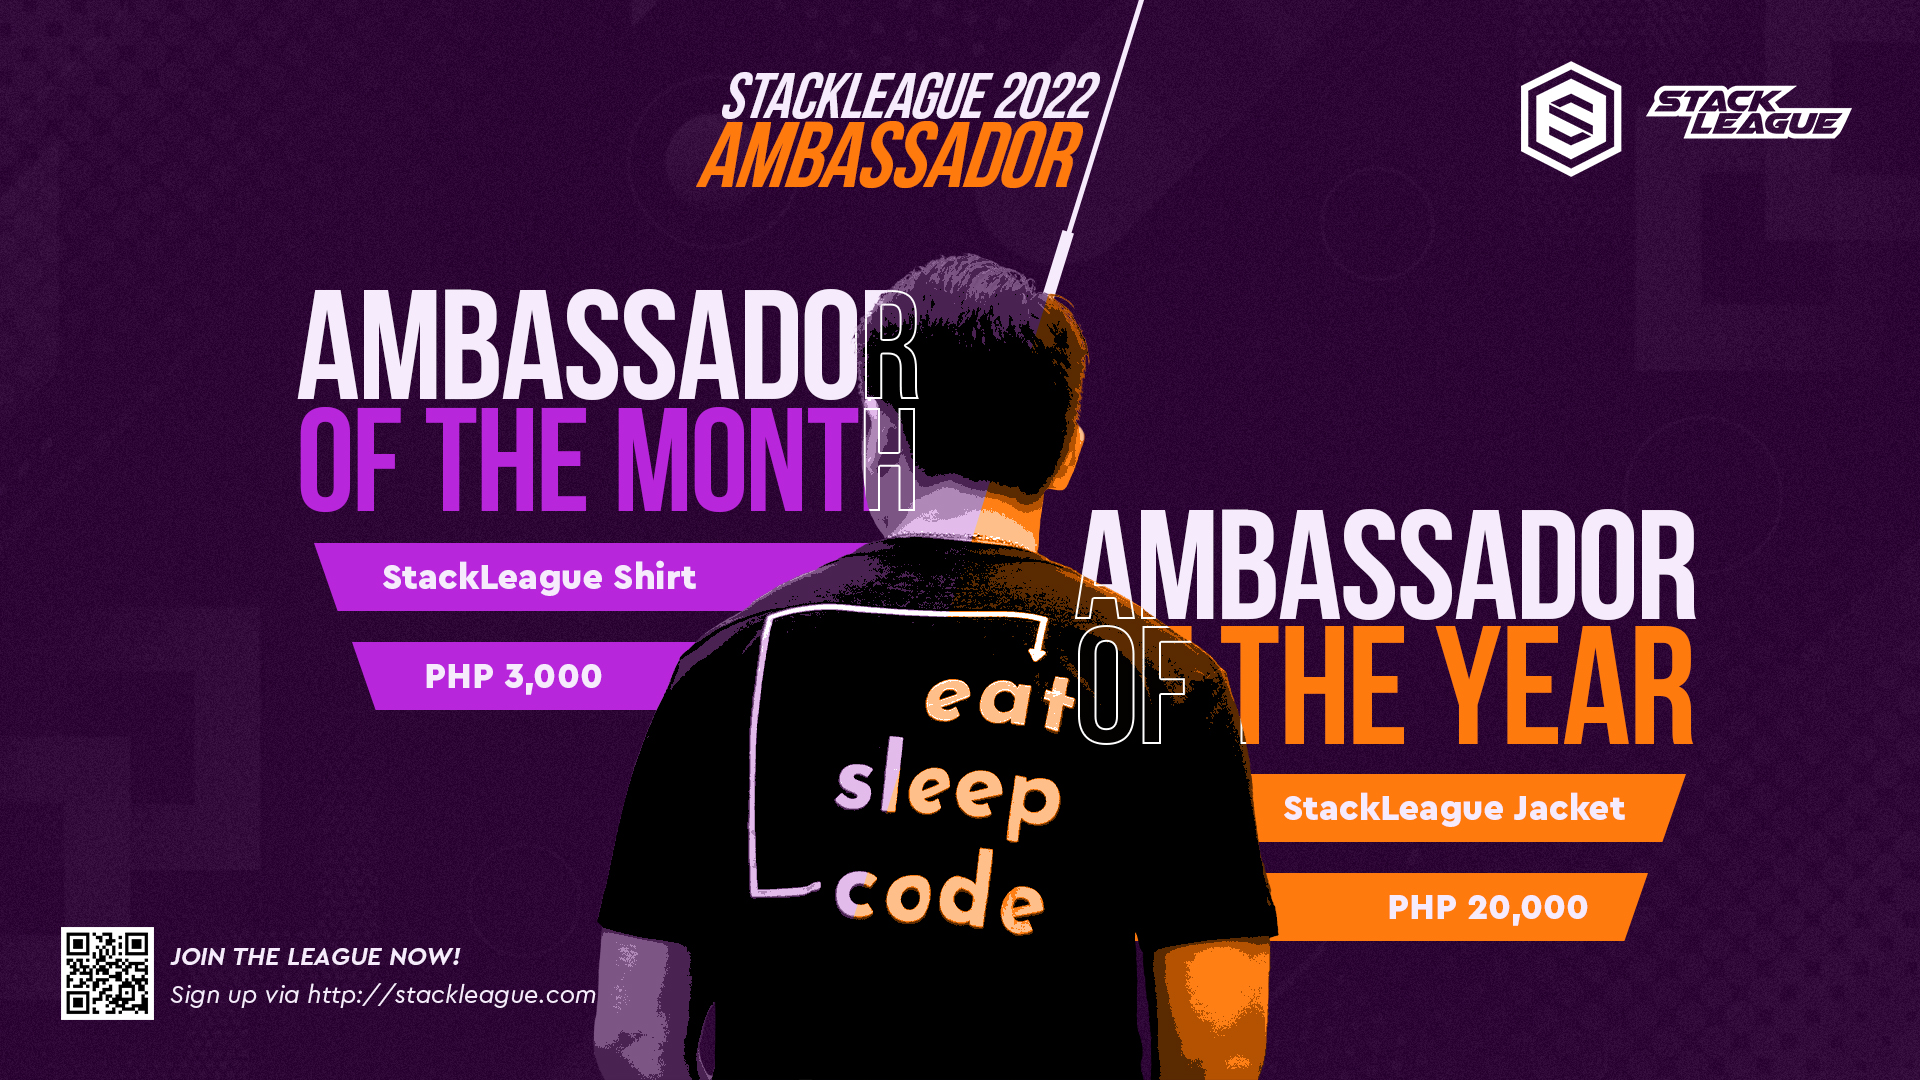 Stackleague Ambassador Program 2022 is NOW OPEN! 